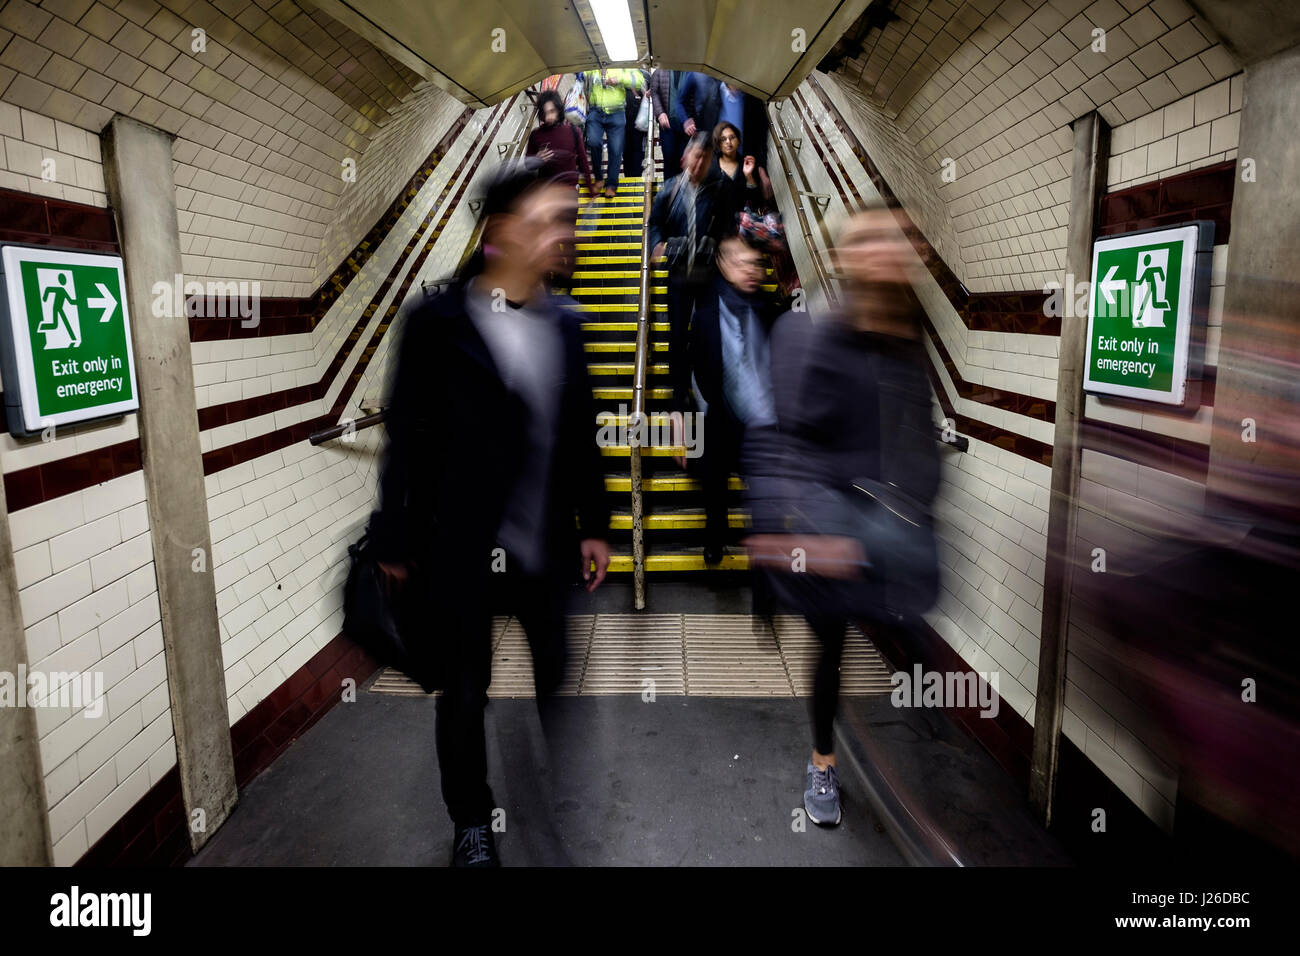 Les gens marche rapide pendant les heures de pointe à une station de métro à Londres, Angleterre, Royaume-Uni, Europe Banque D'Images